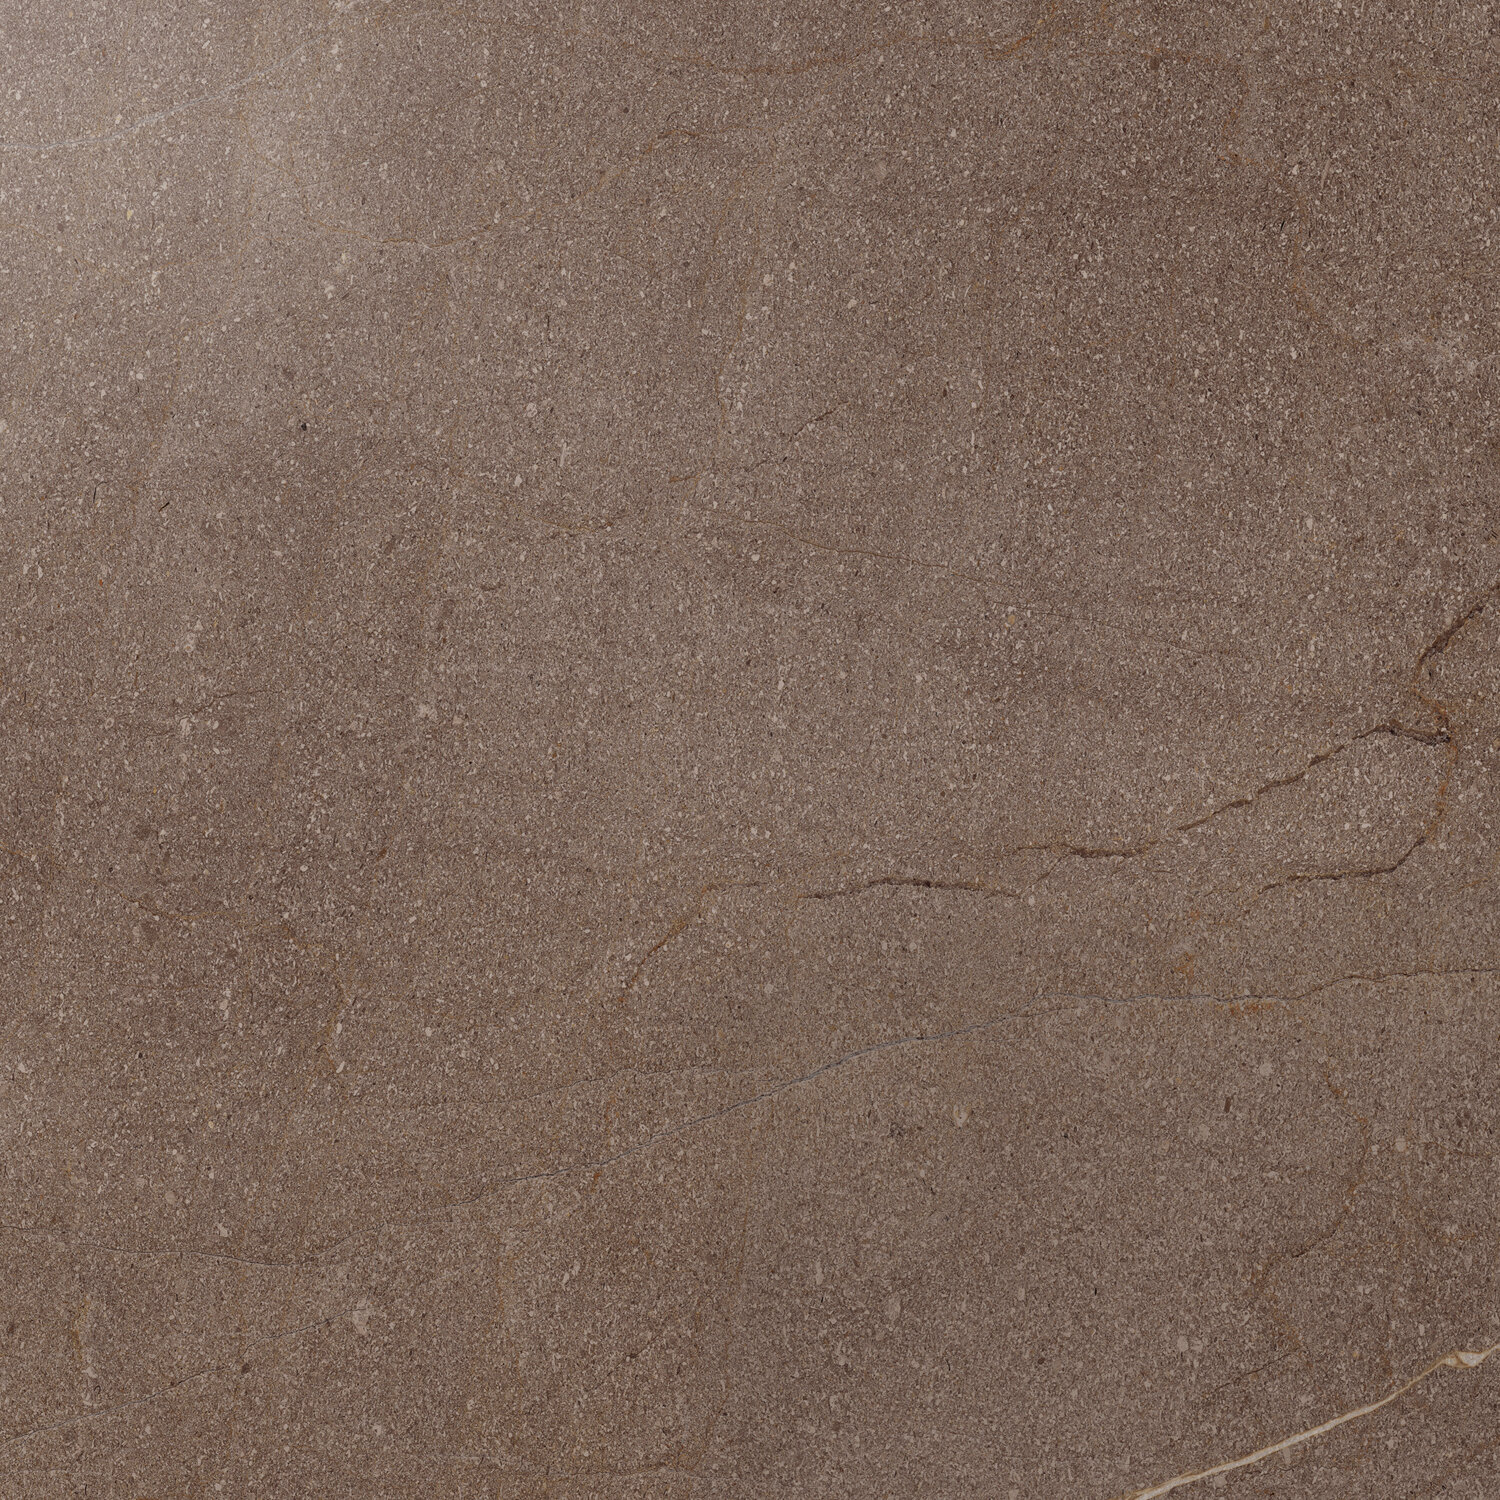 Плитка из керамогранита Italon 610015000257 контемпора бёрн пат и рет для стен и пола, универсально 60x60 (цена за 1.08 м2)